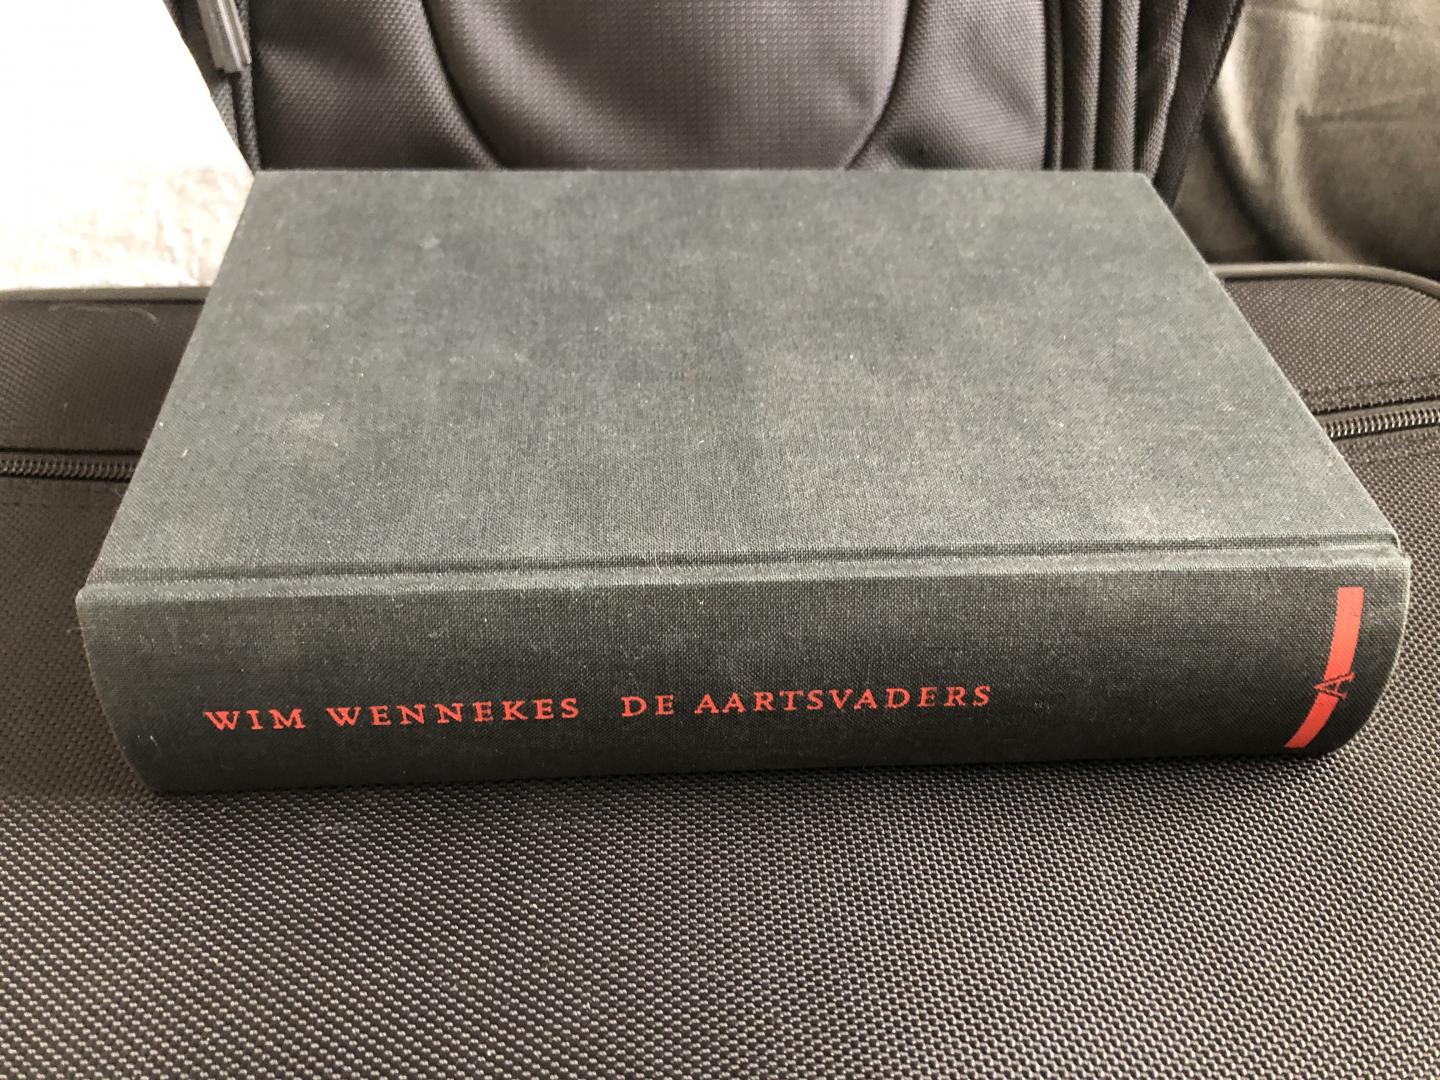 Wennekes, Wim - De aartsvaders. Grondleggers van het Nederlandse bedrijfsleven.